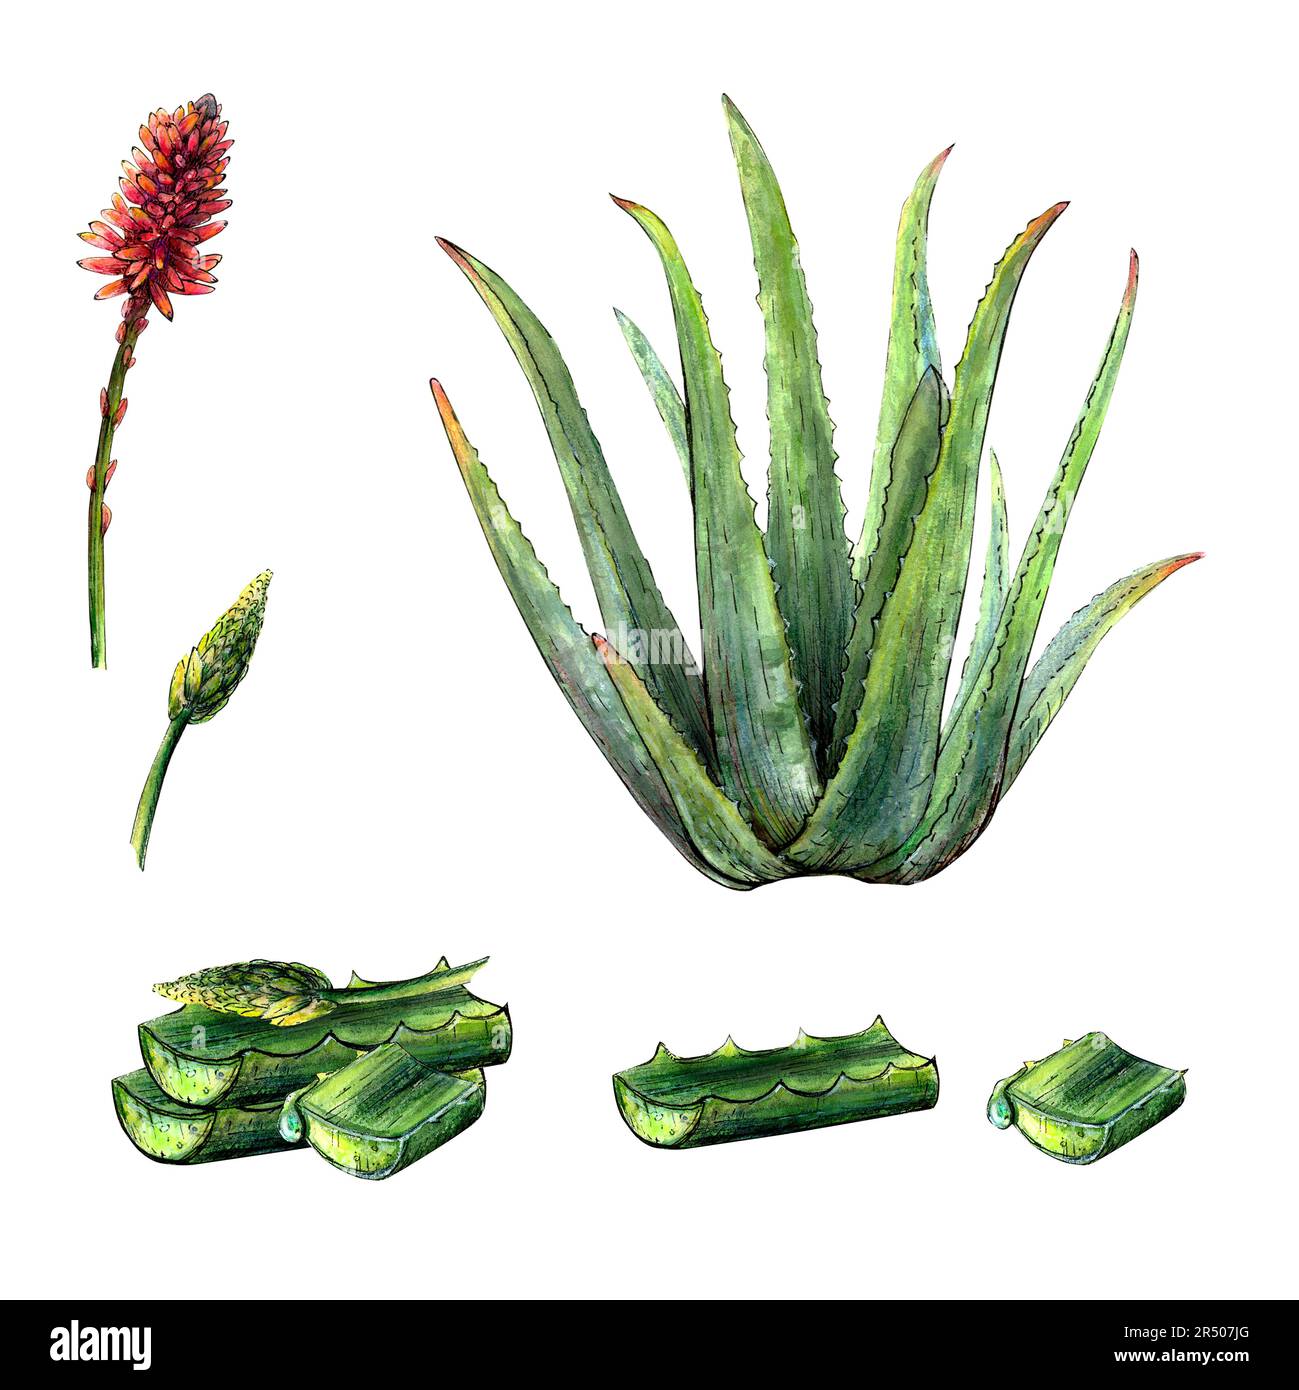 Aquarelle dessin botanique de la plante de vera d'aloès avec des feuilles, des fleurs, des fleurs et des feuilles hachées sur fond blanc. Image réaliste et détaillée pour Banque D'Images